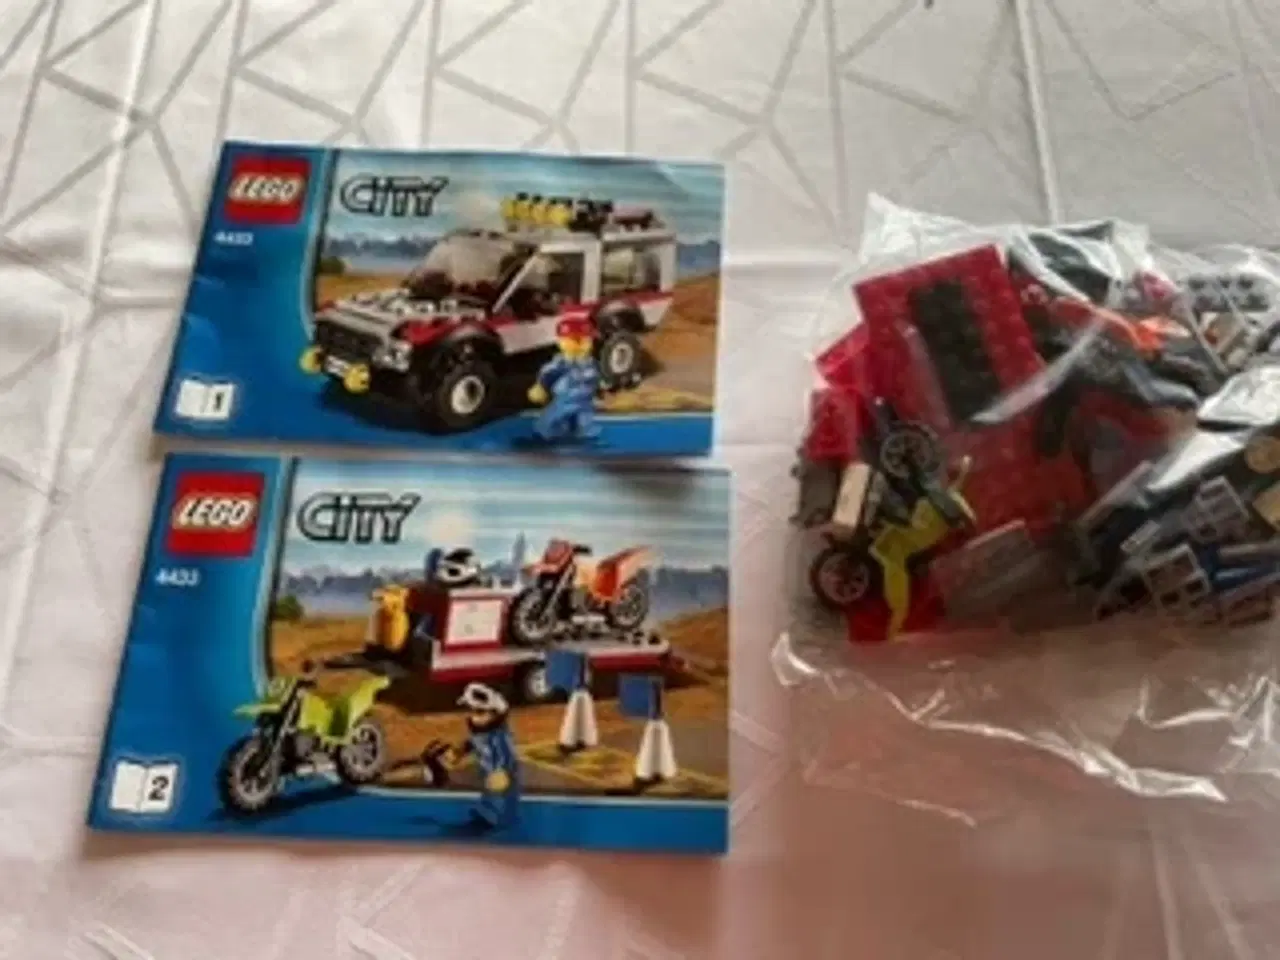 Billede 1 - Lego City 4433 motorcross